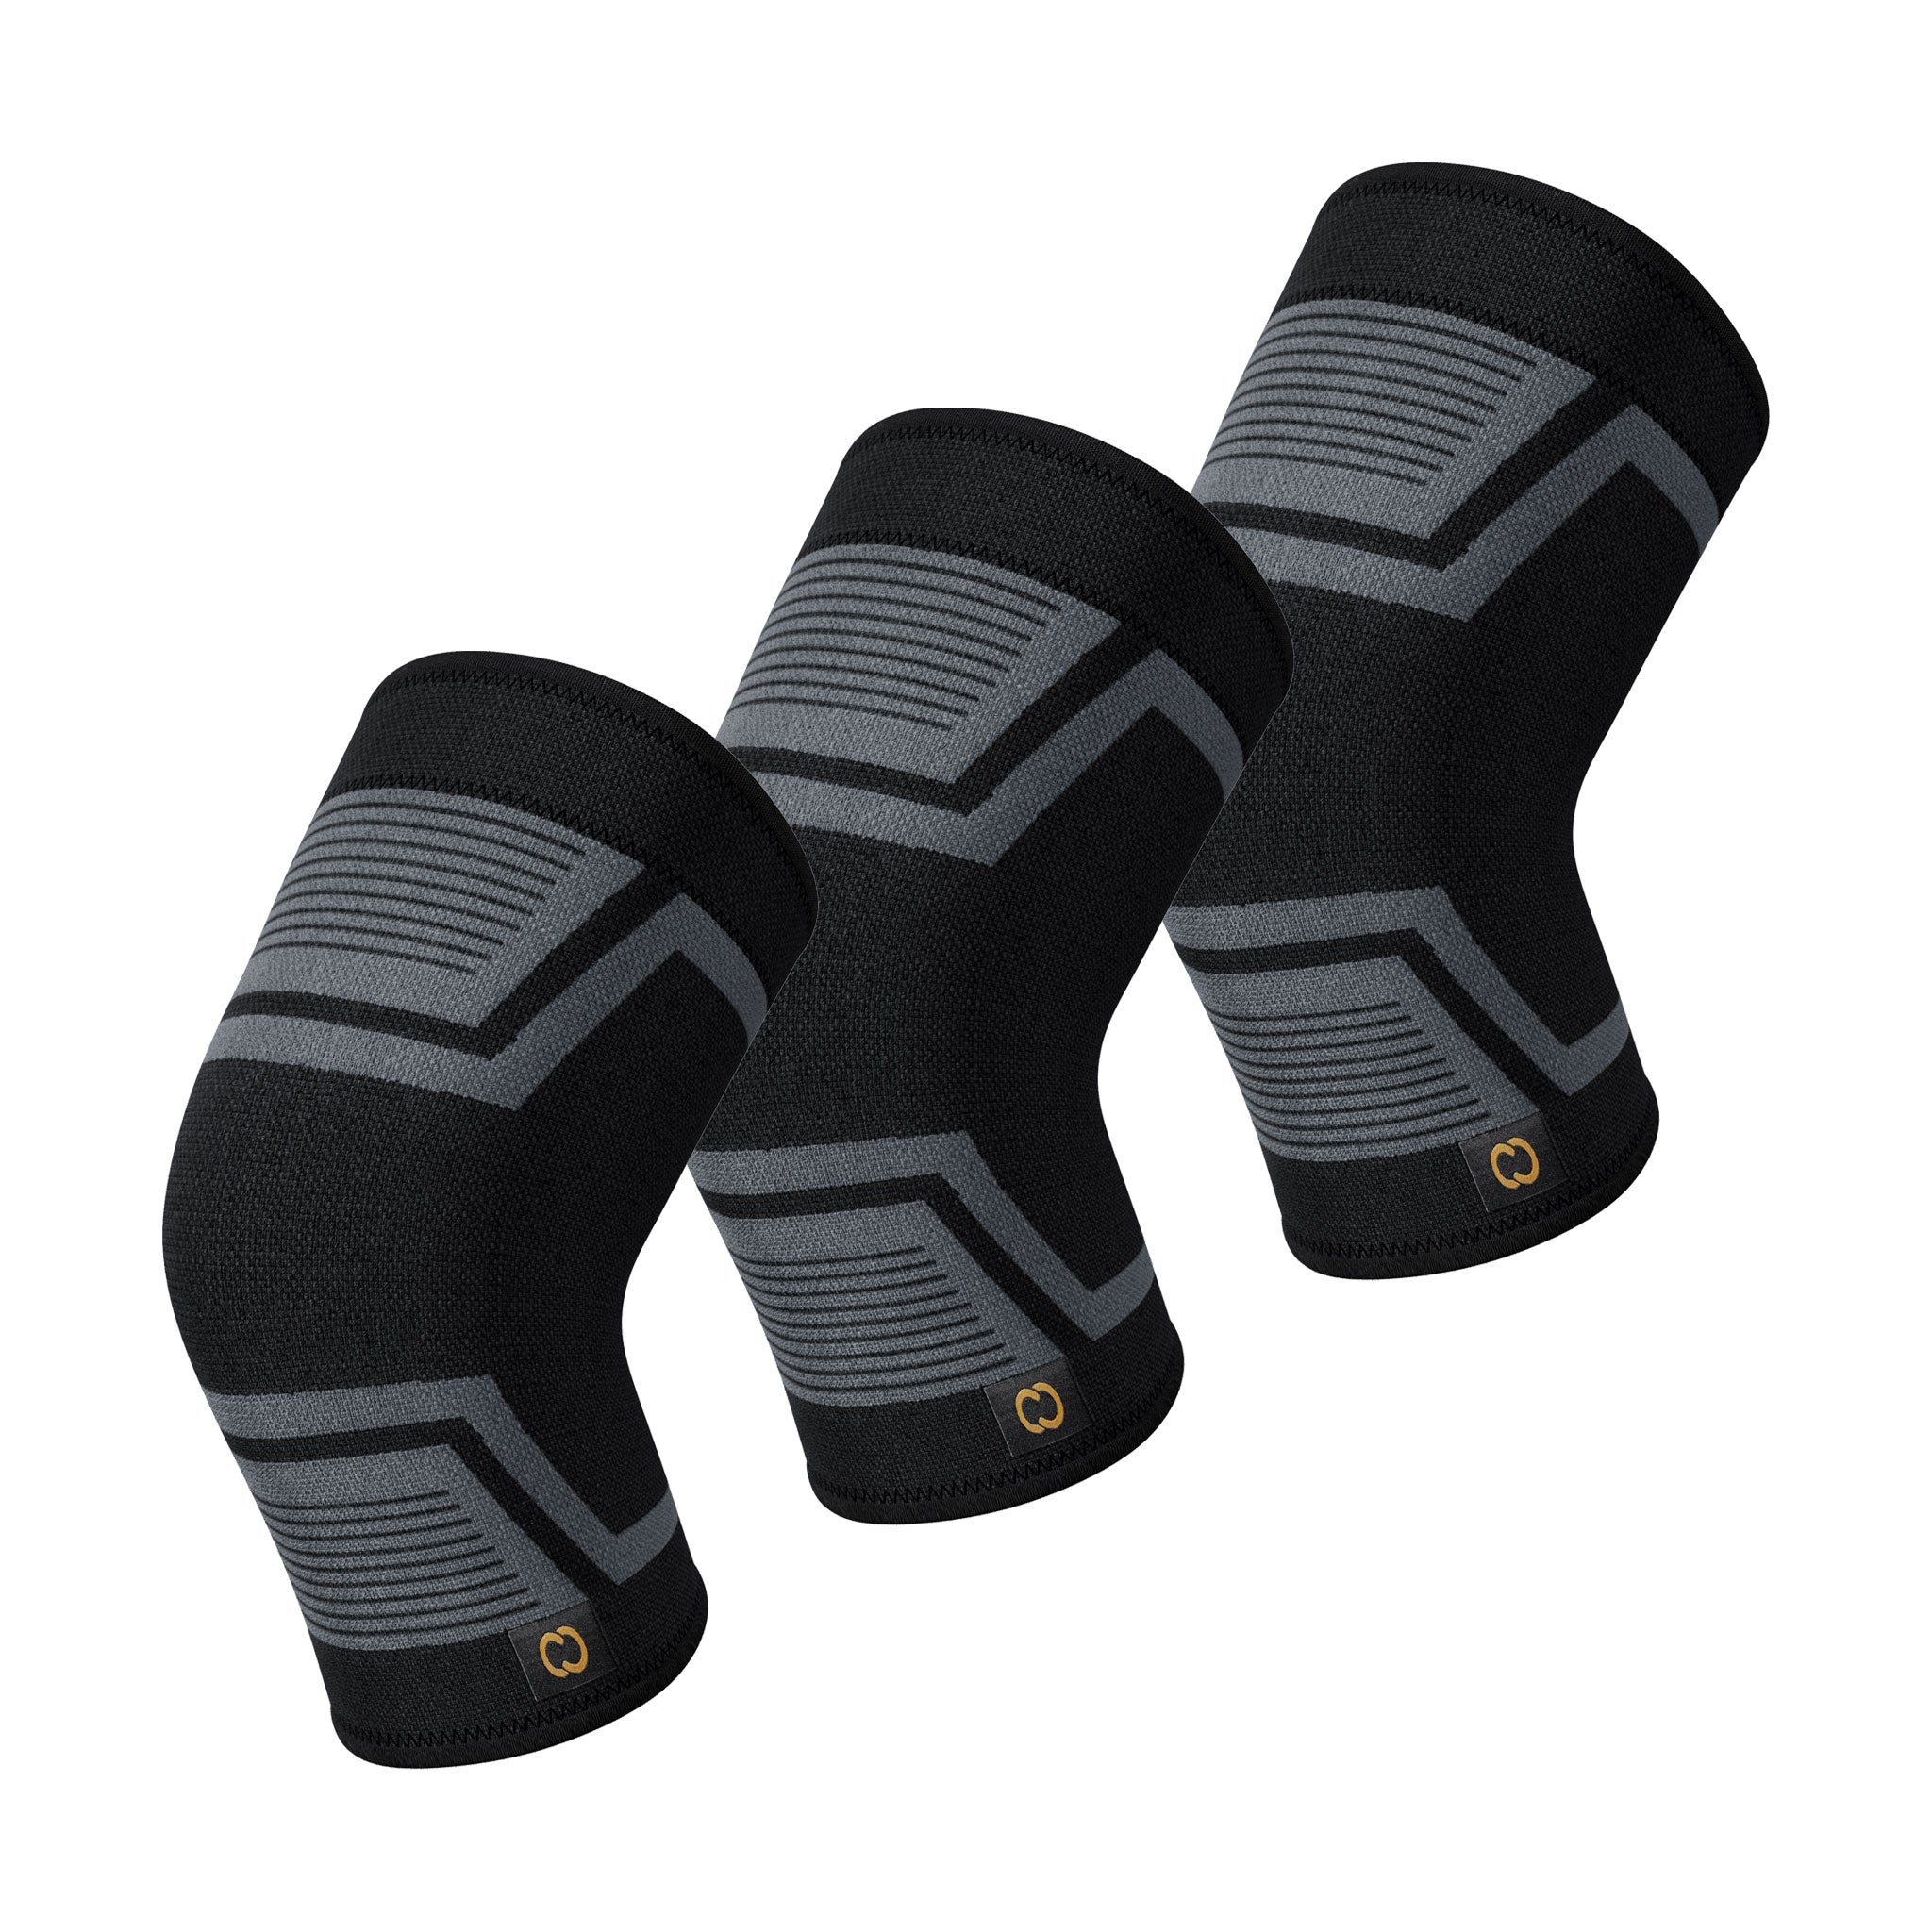 PowerKnit Knee Sleeve - 3 Pack